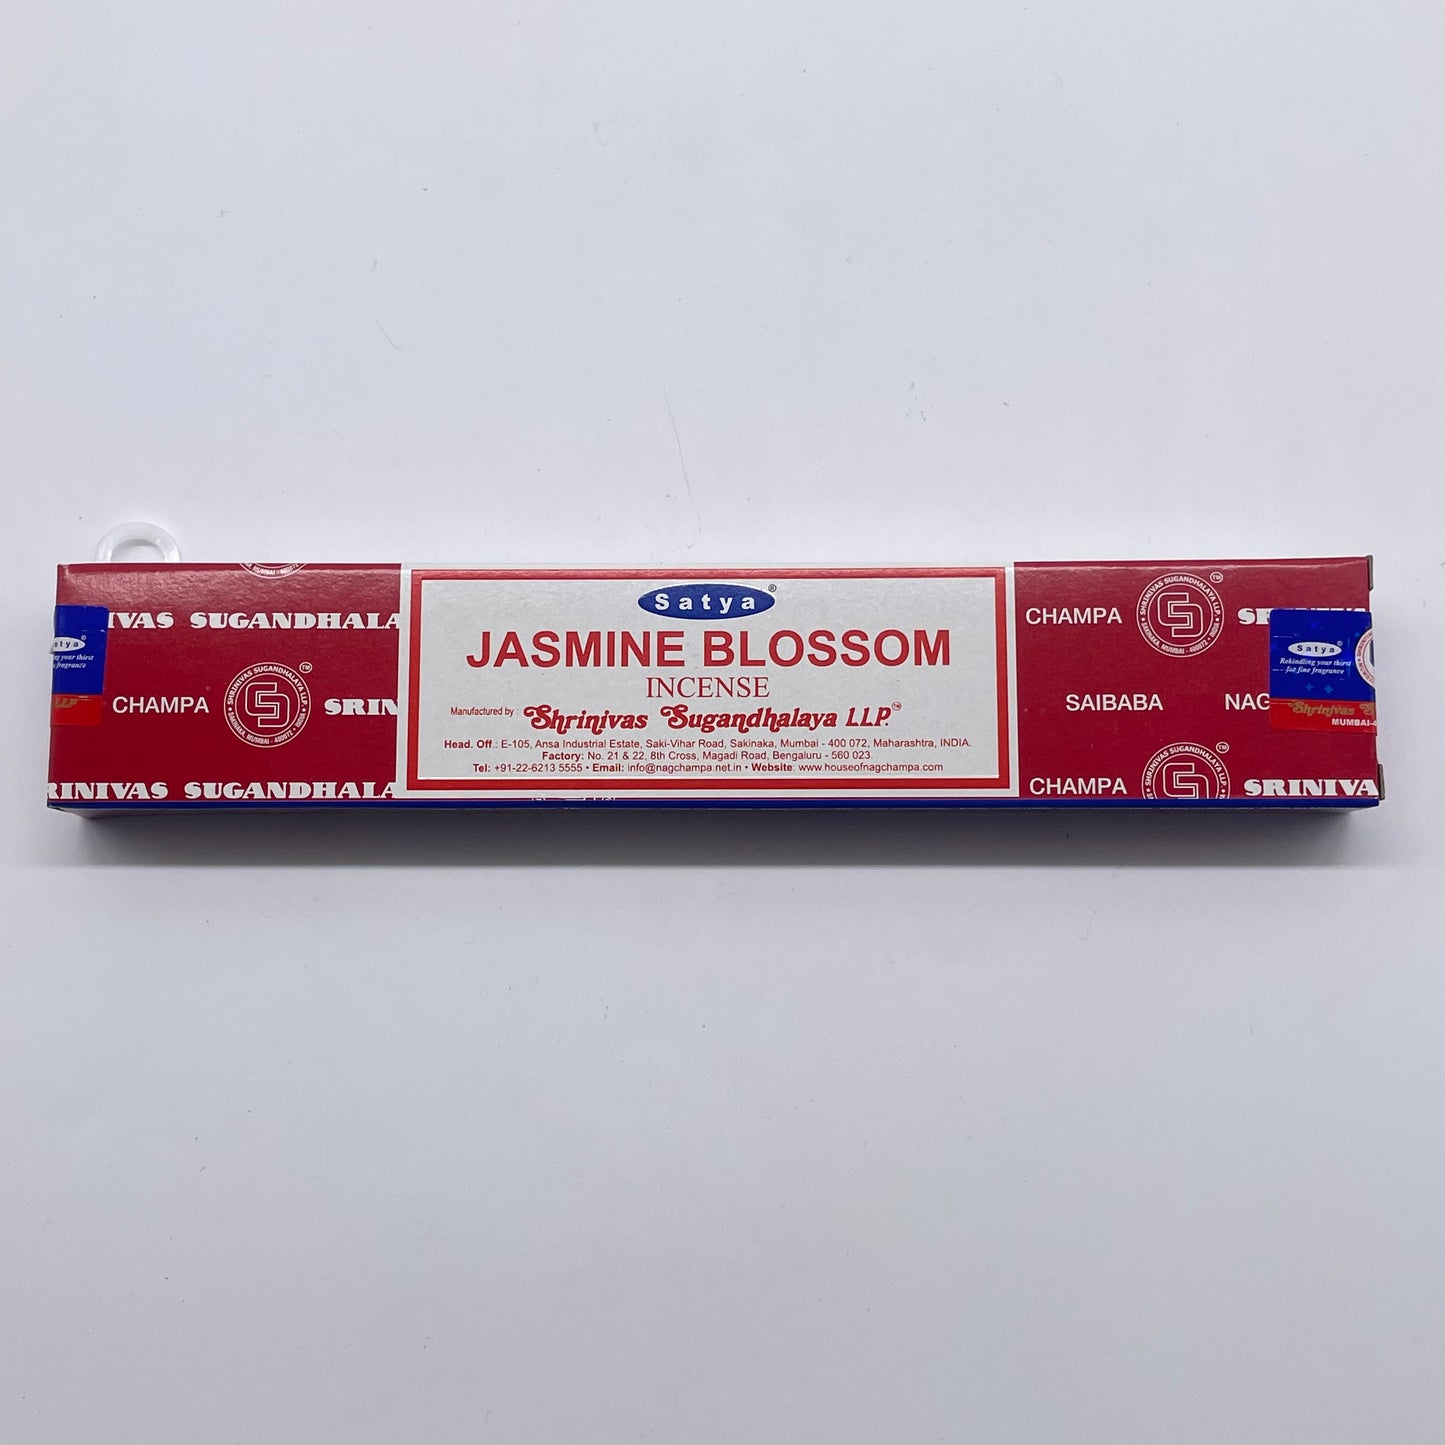 SATYA 'Jasmine Blossom' Incense Sticks